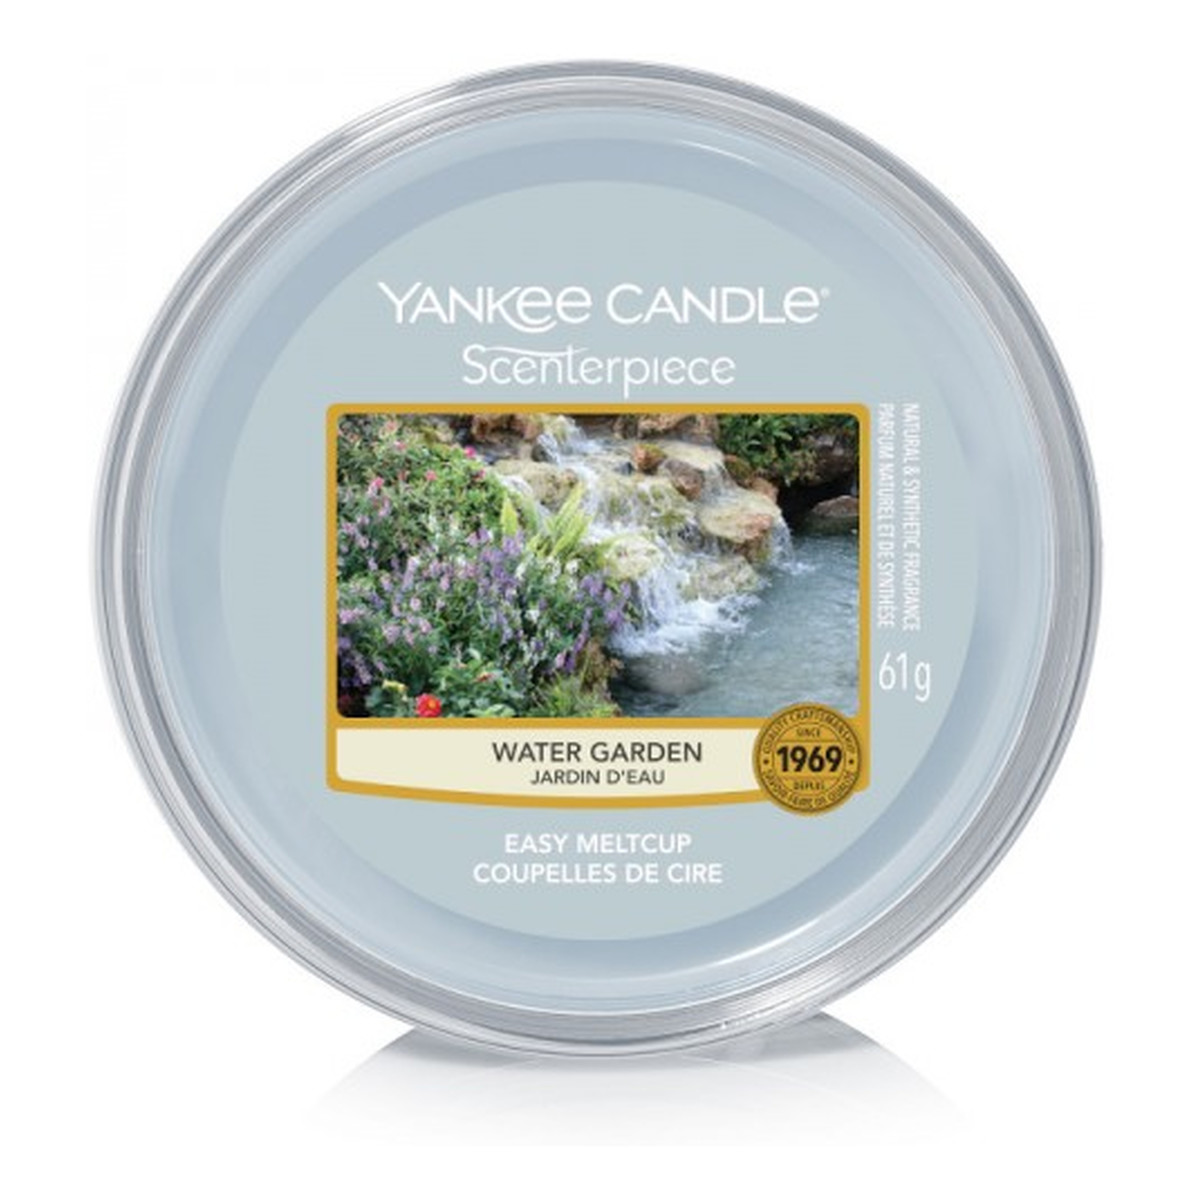 Yankee Candle Scenterpiece wosk do elektrycznego kominka Water Garden 61g